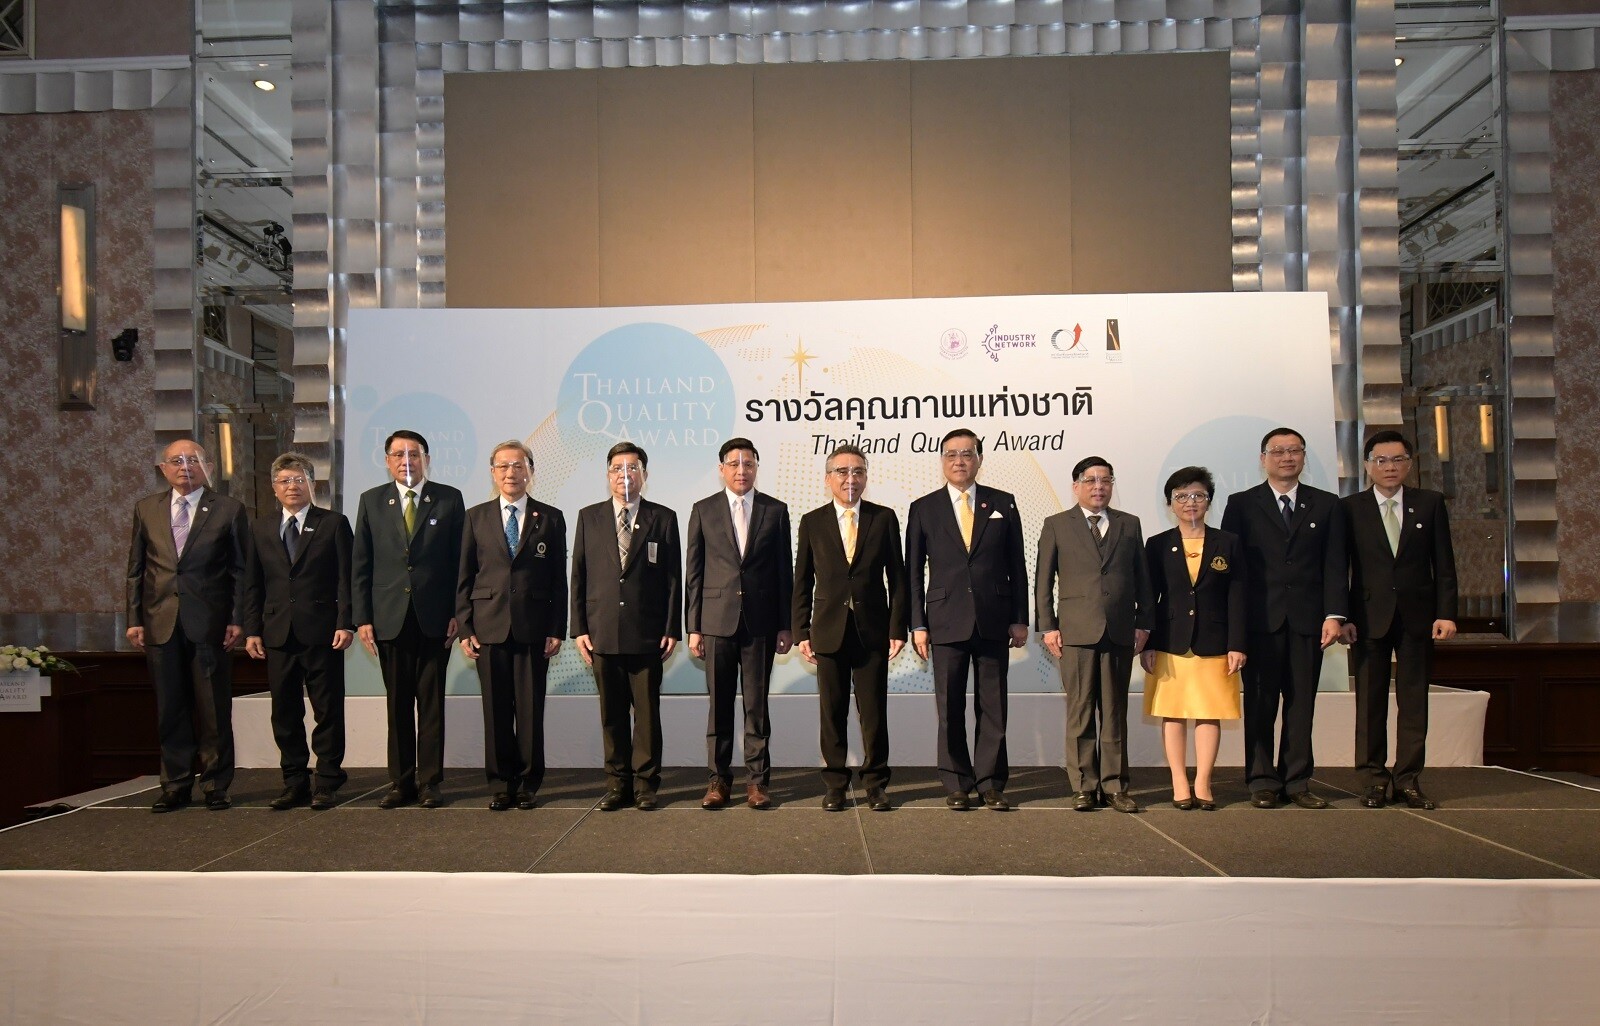 ร่วมยินดีกับก้าวแห่งความสำเร็จขององค์กรไทย สู่การคว้ารางวัลคุณภาพแห่งชาติ ประจำปี 2563